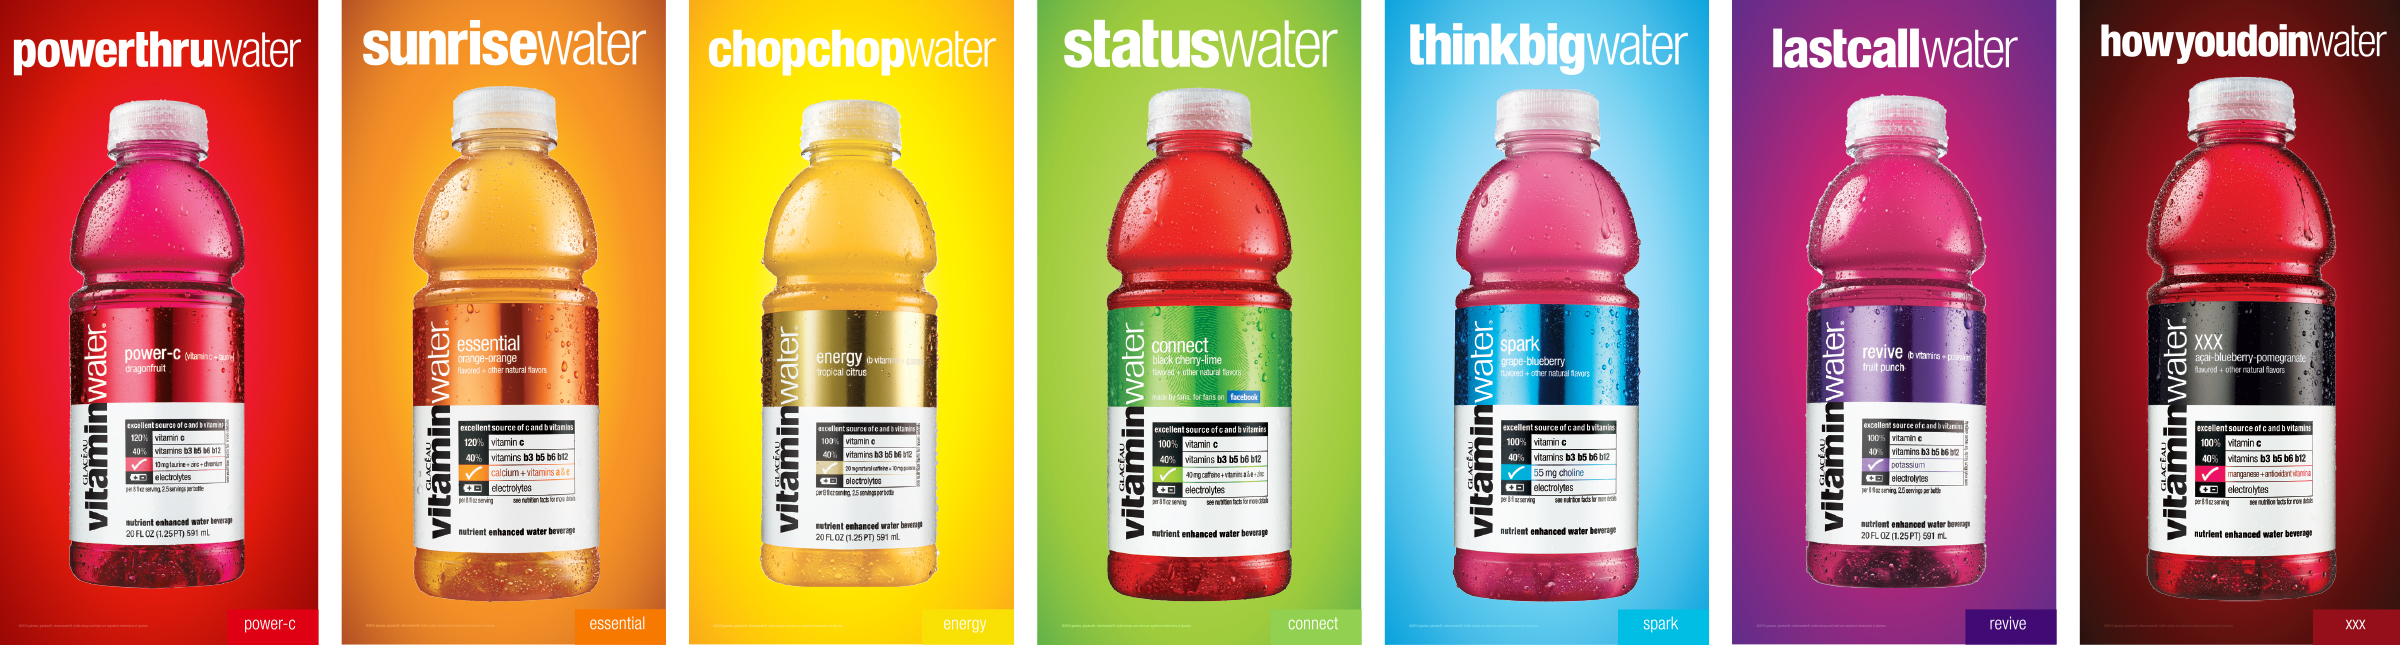 Vitaminwater_blankwater_bottles.jpg